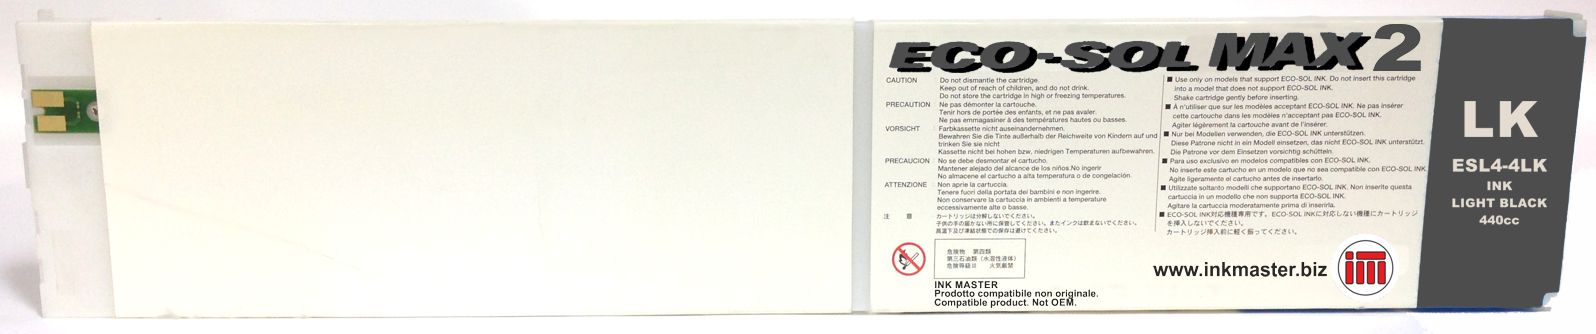 Cartuccia rigenerata ROLAND ECO-SOL MAX 2 LIGHT BLACK per ROLAND BN-20 RF-640 SP-300i SP-540i VS-300i VS-540i VS-640i XF-640 XR-640